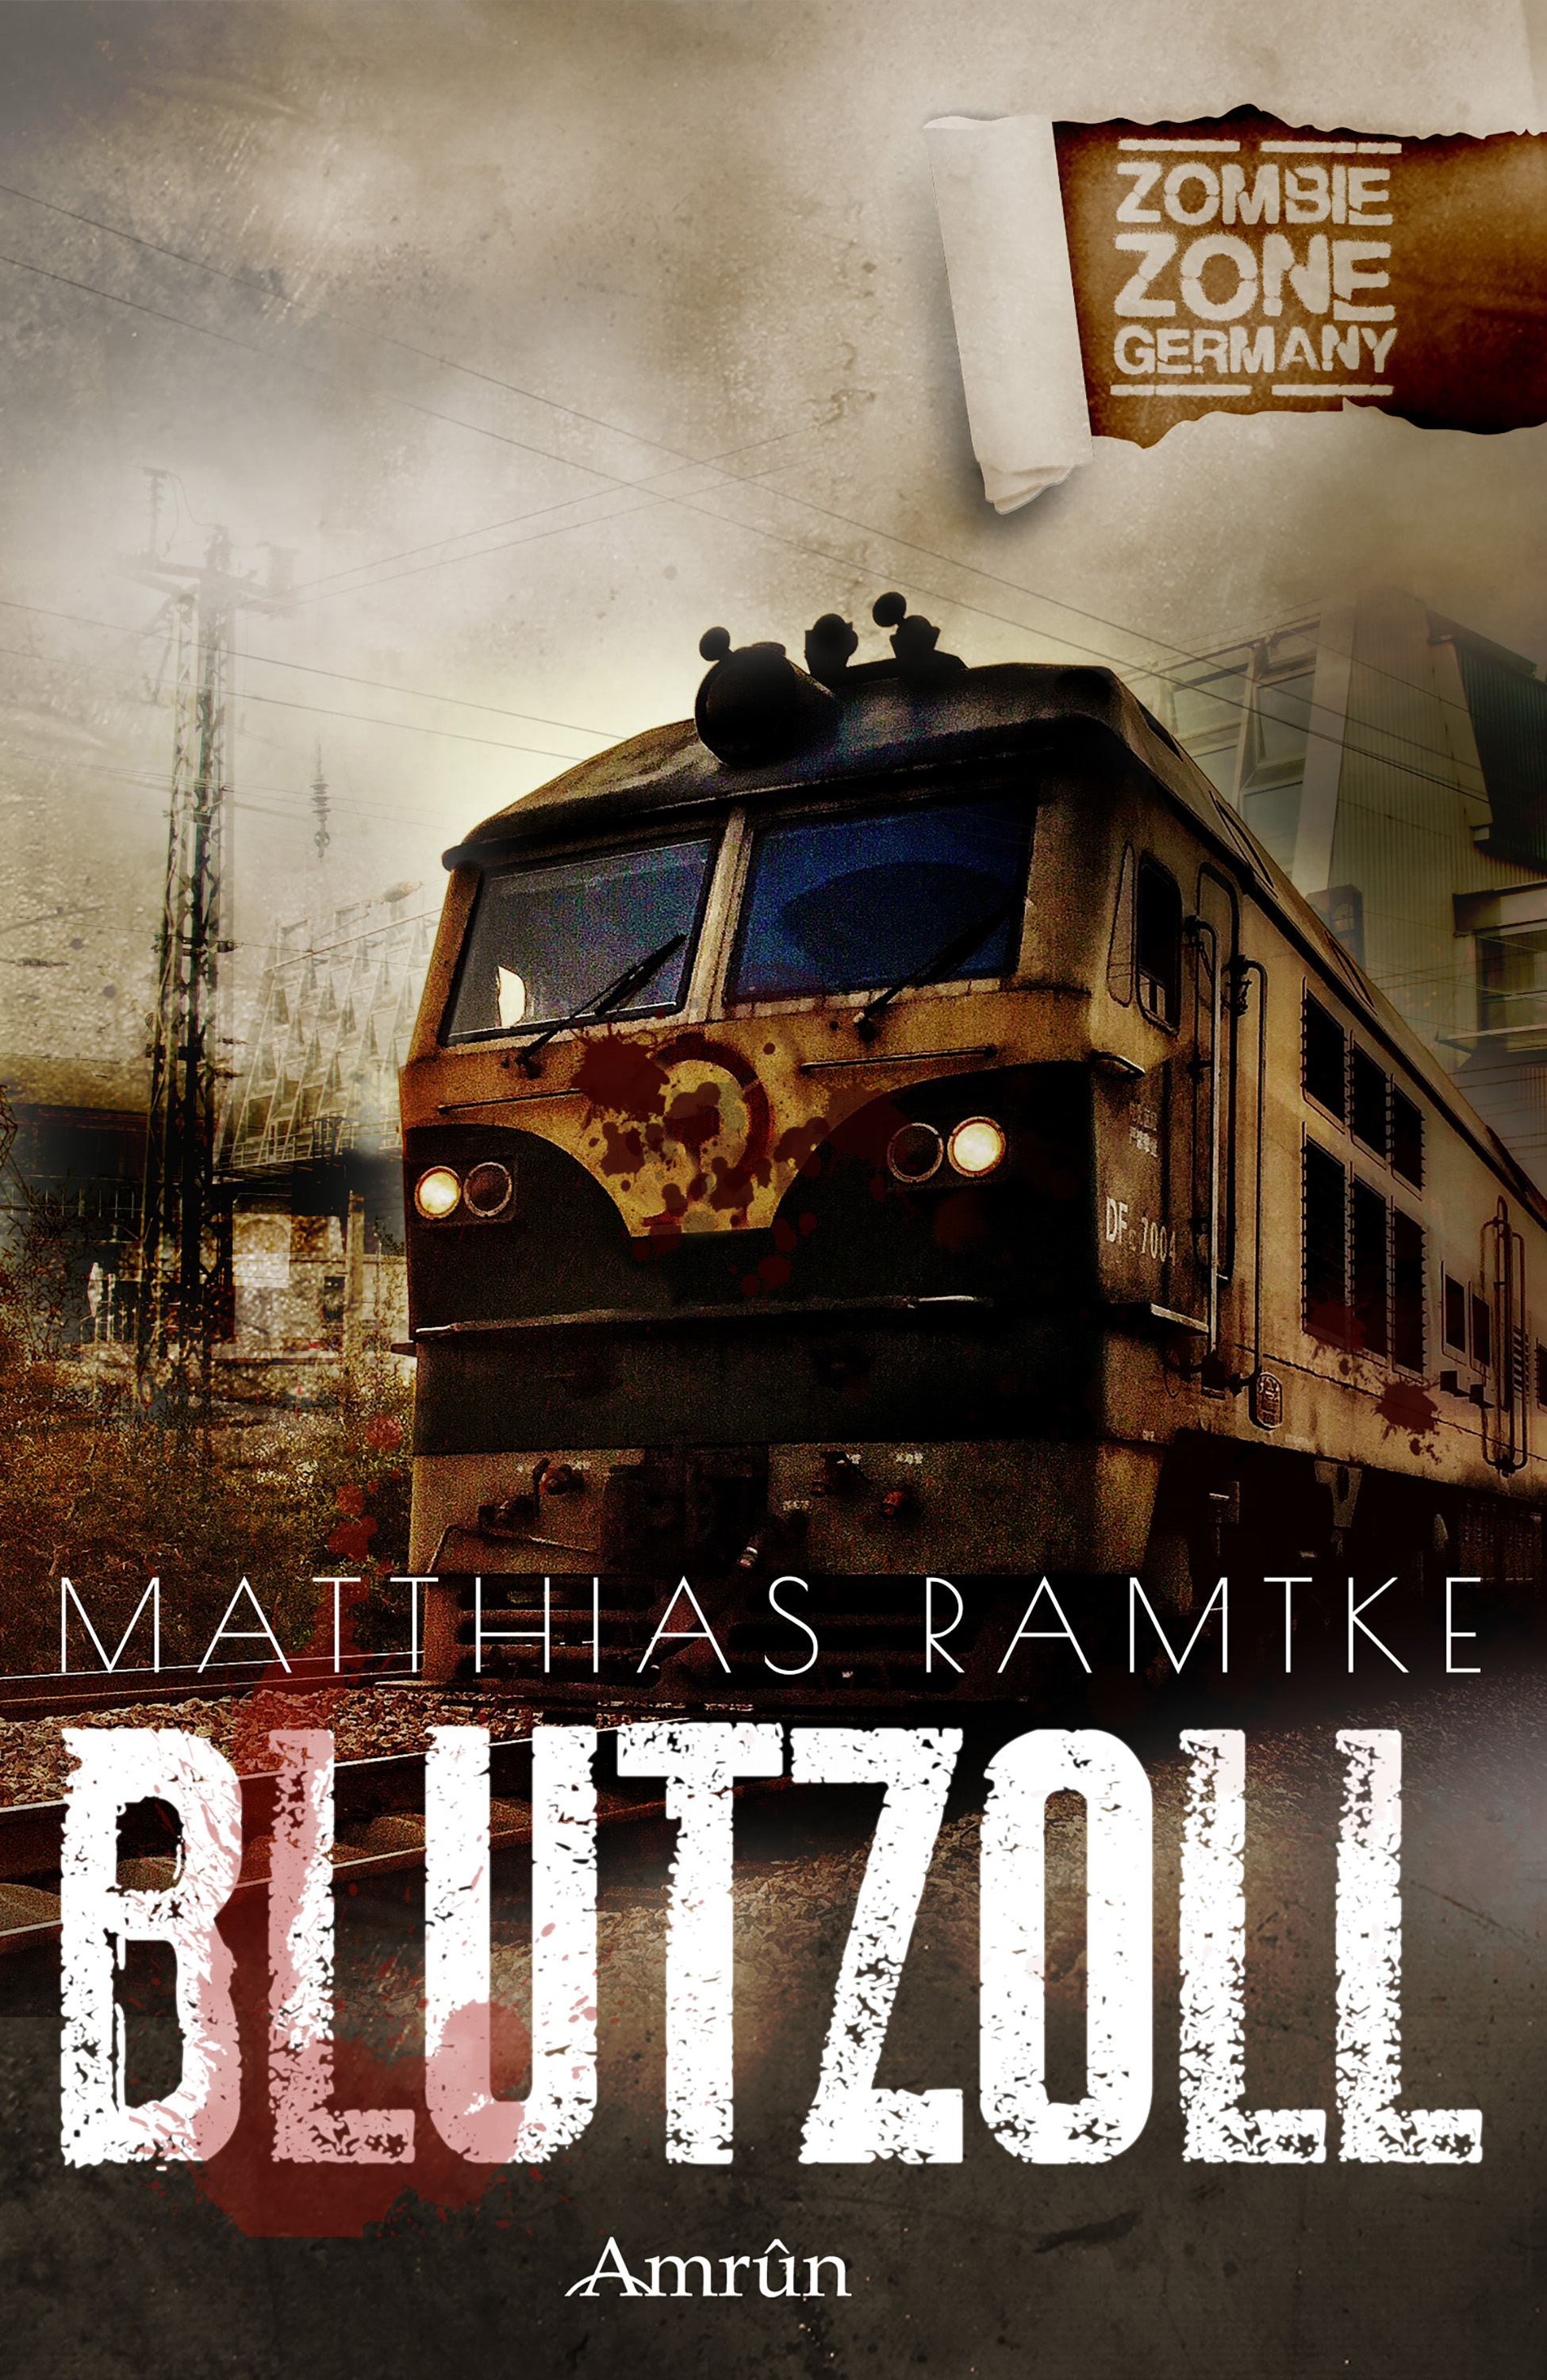 Matthias Ramtke Zombie Zone Germany: Blutzoll